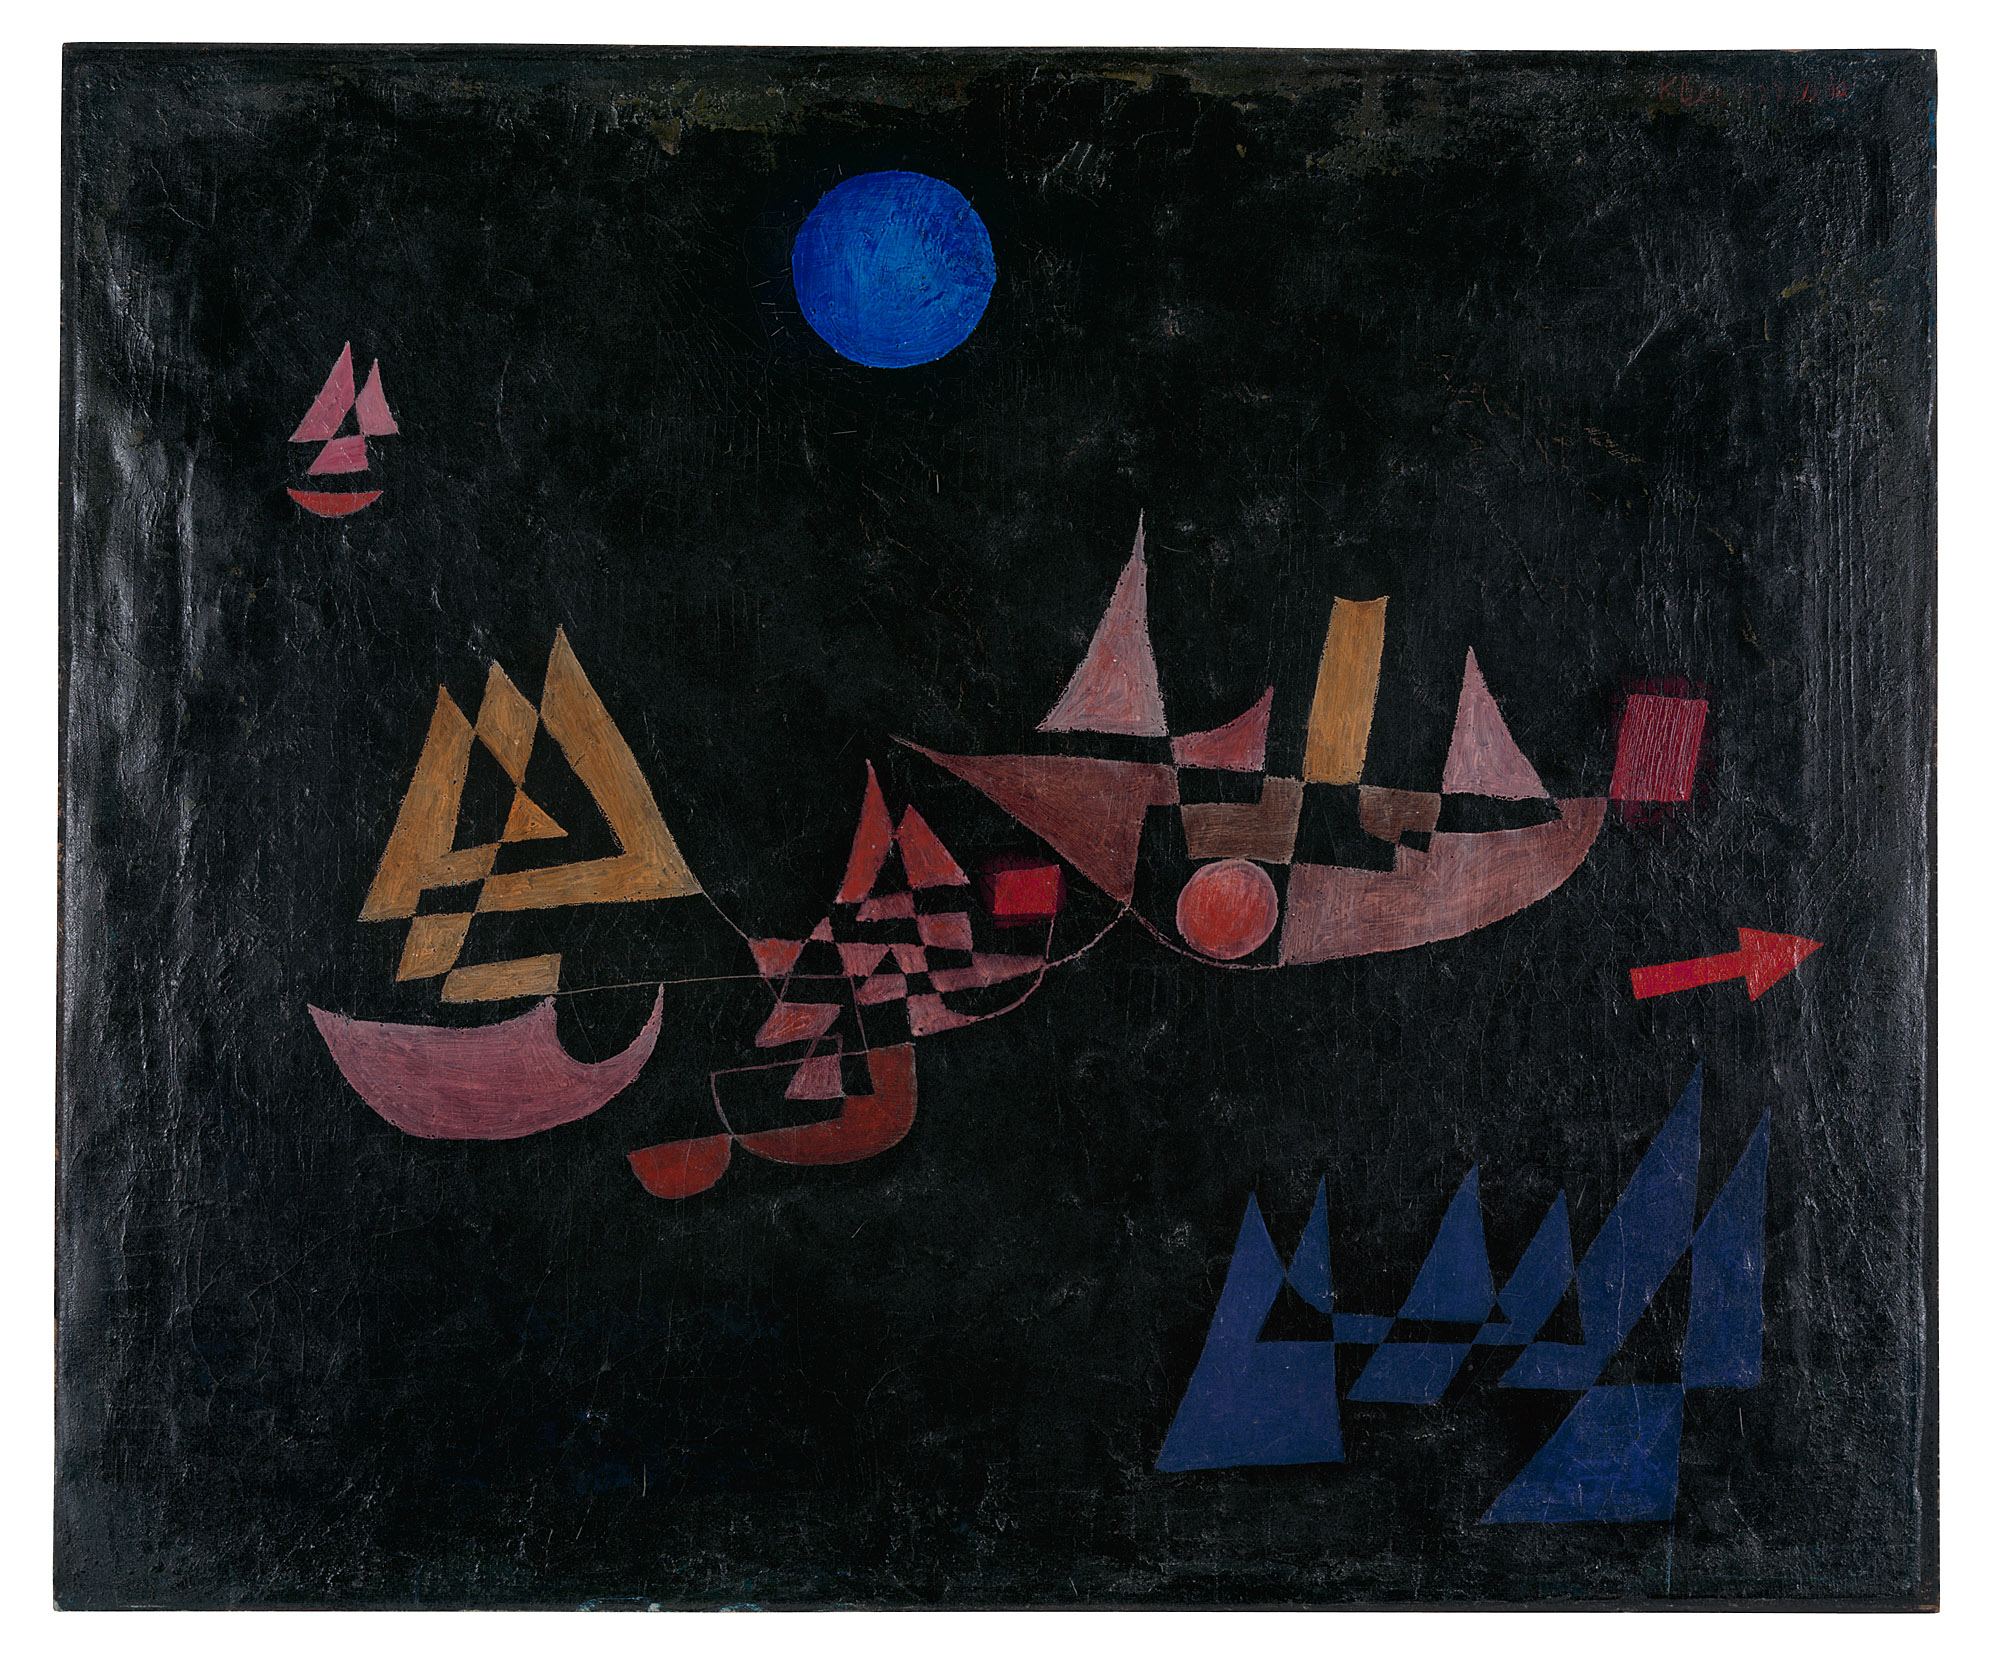 Vertrek van de schepen by Paul Klee - 1927 - 50 x 60 cm Zentrum Paul Klee